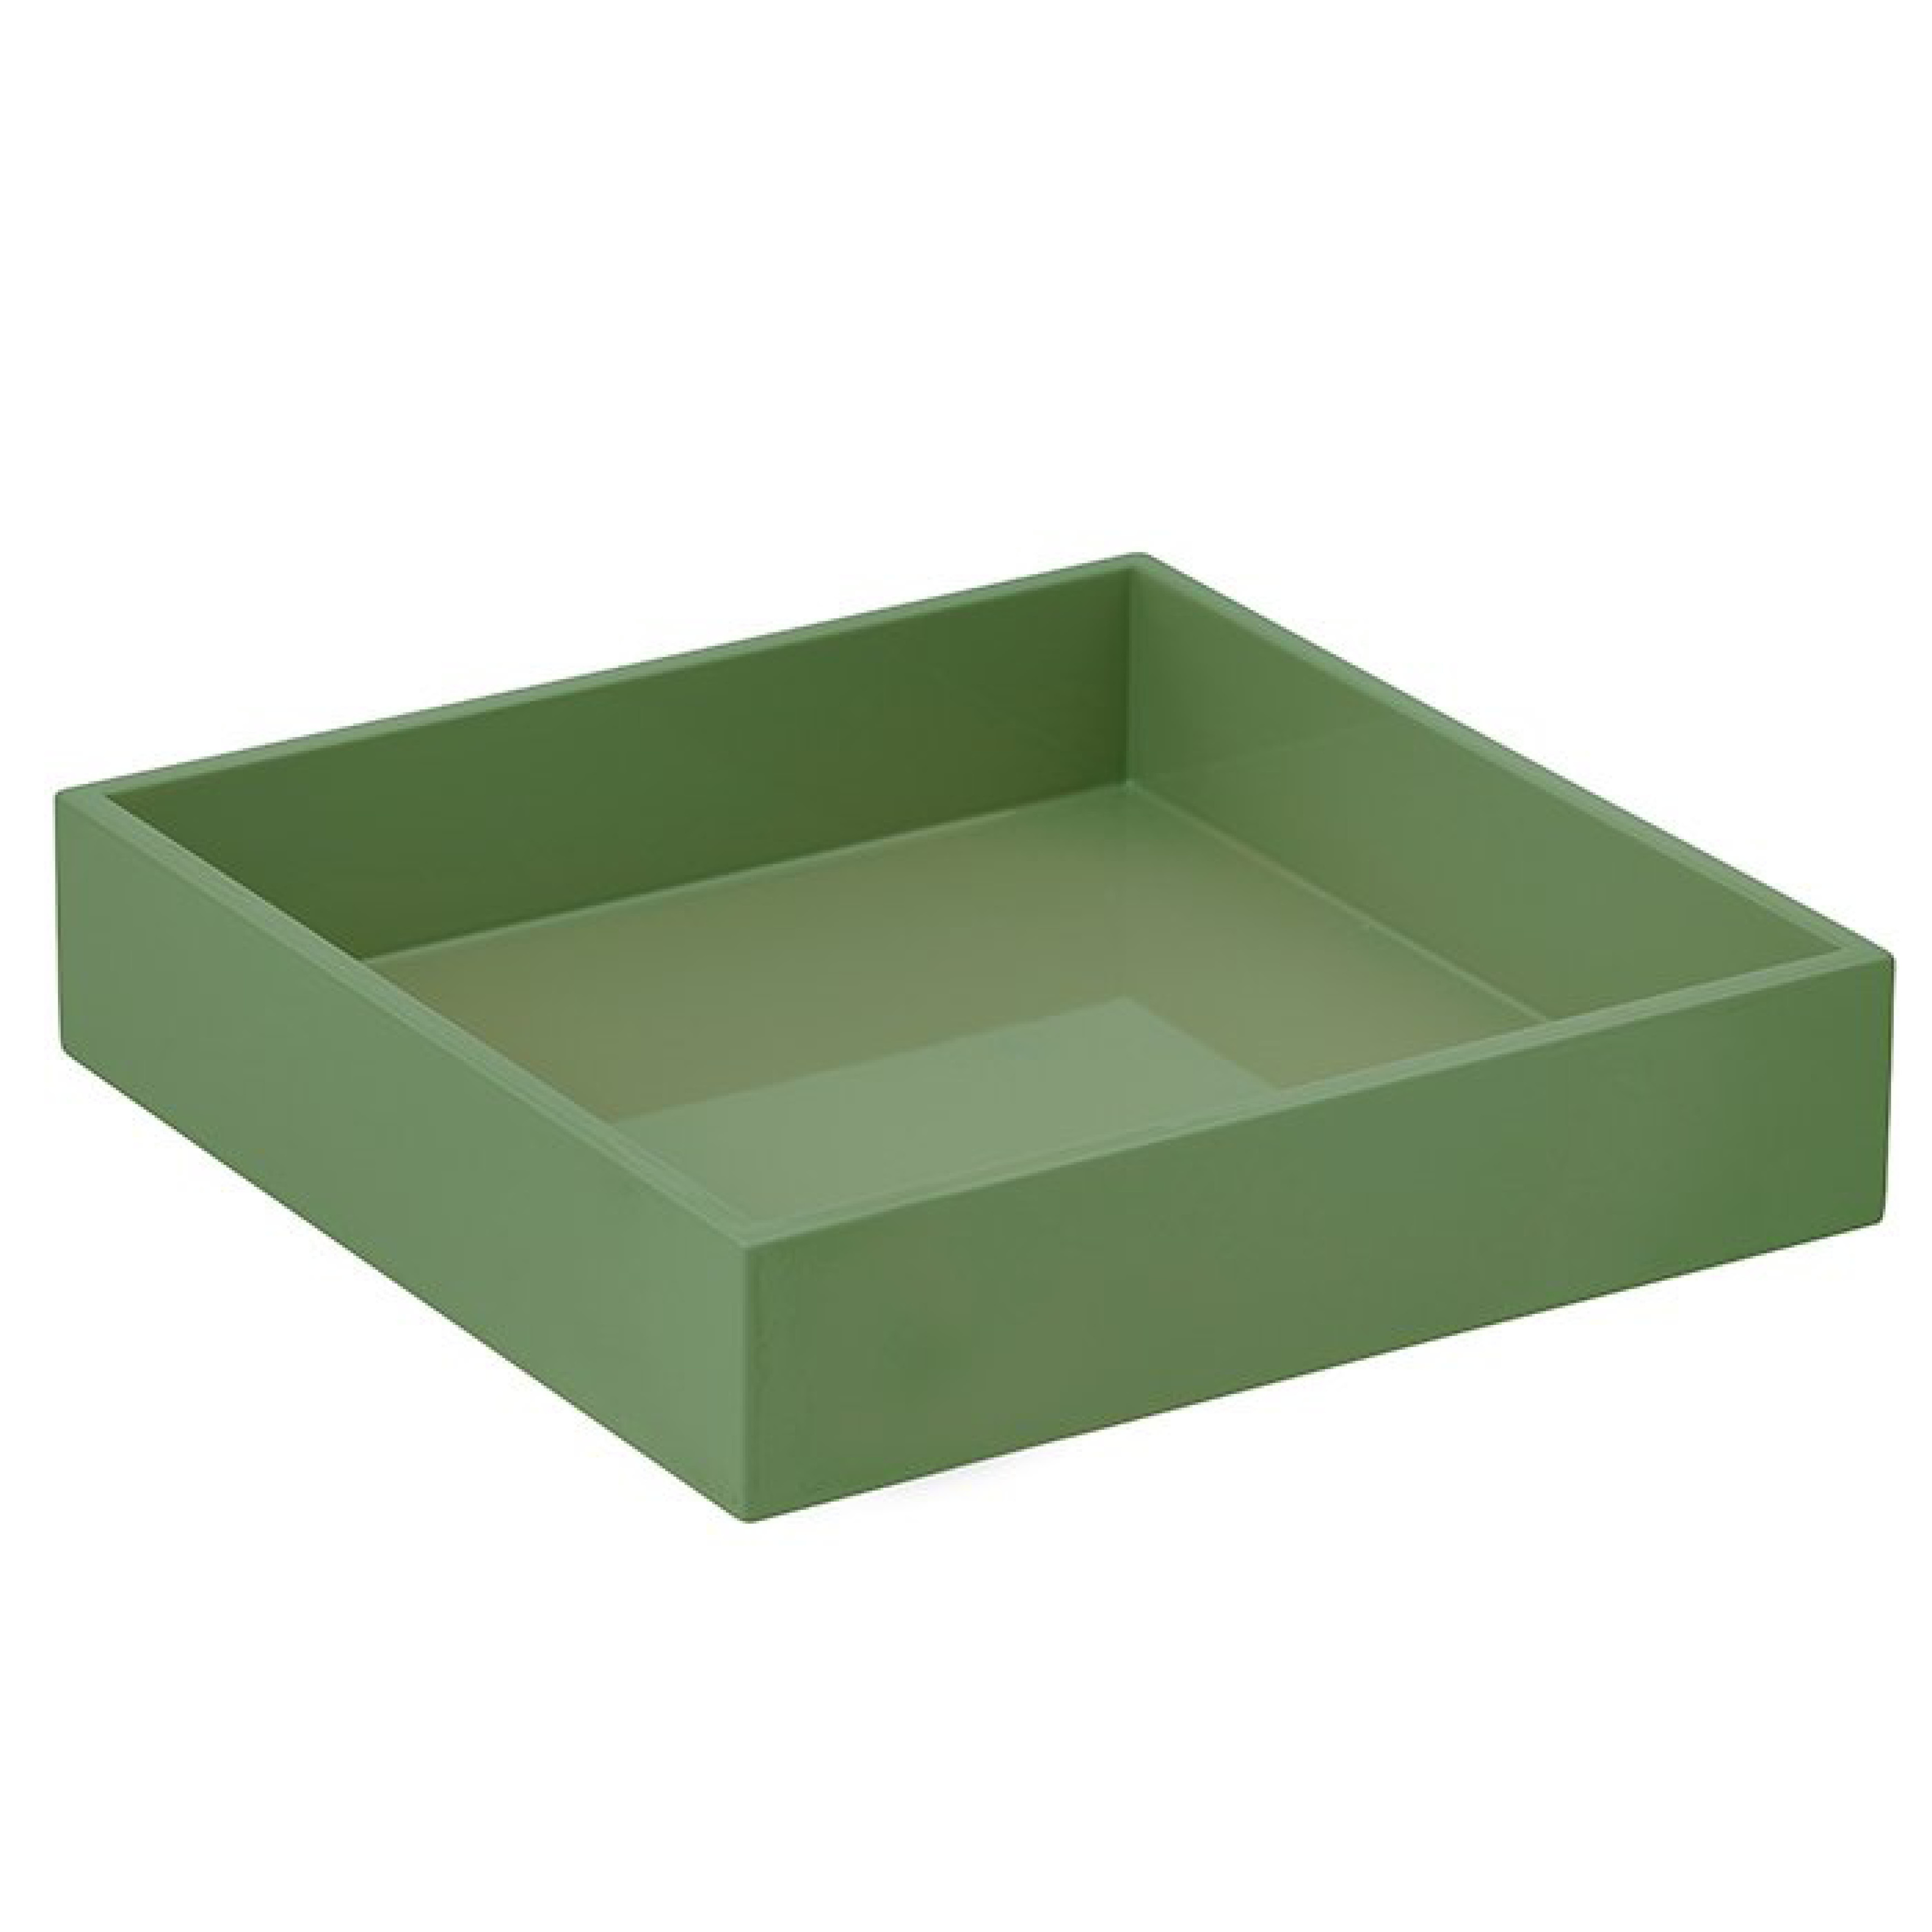 Bricka lack grön 22,5x22,5 cm